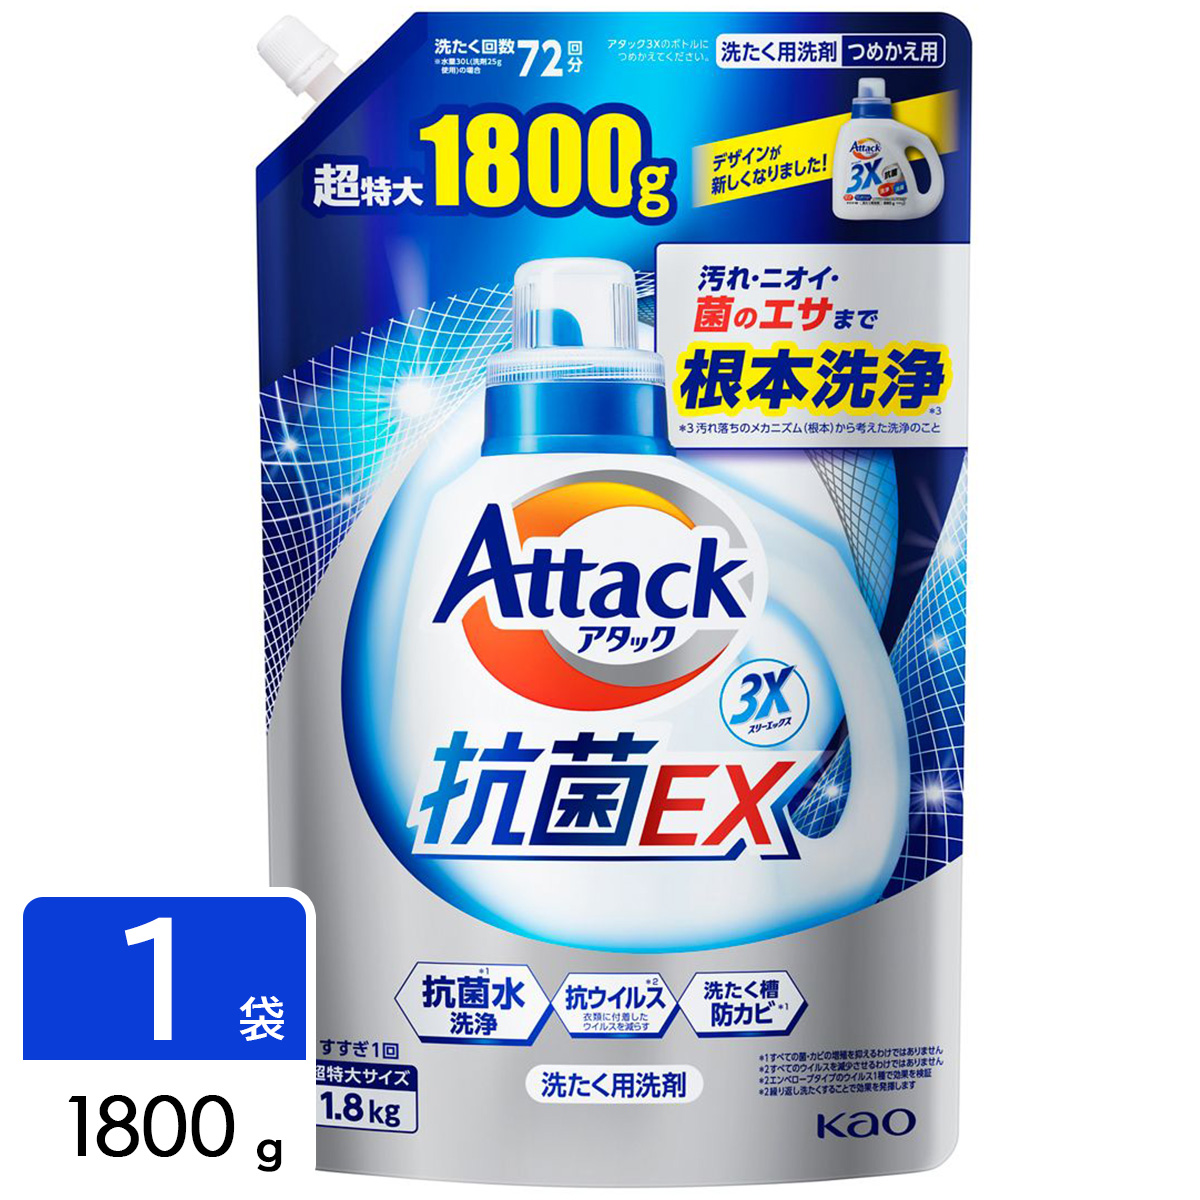 アタック 抗菌EX 洗濯洗剤 詰め替え 超特大 1800g